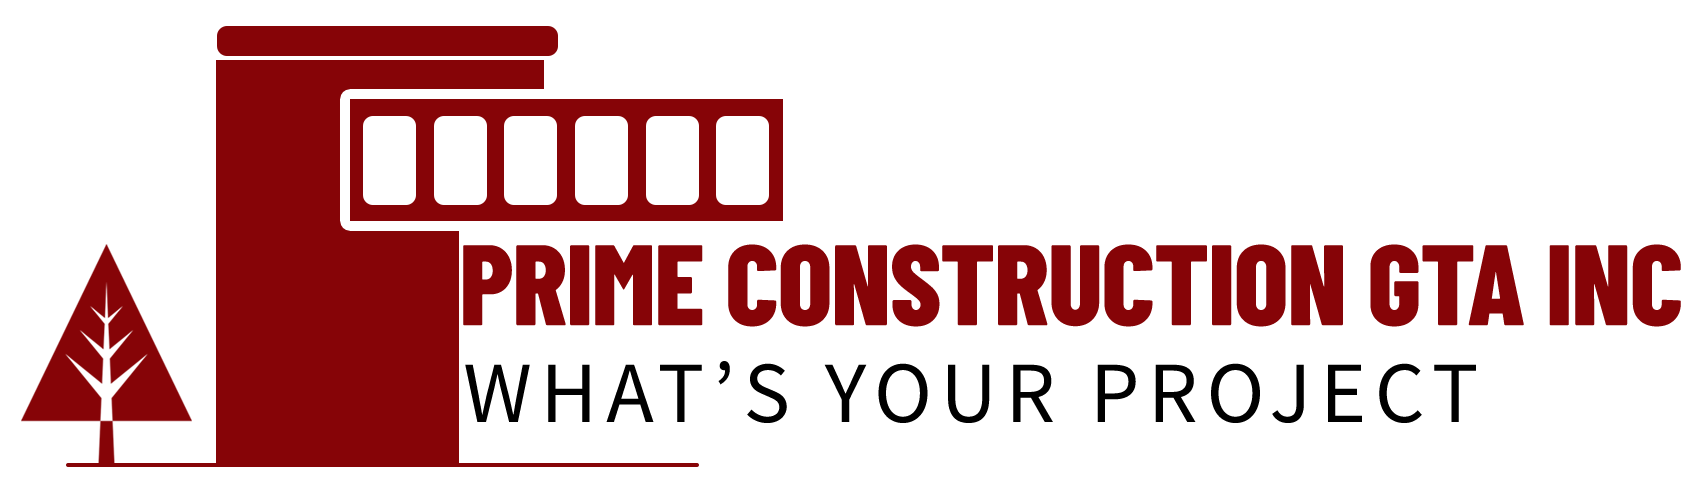 Prime Construction